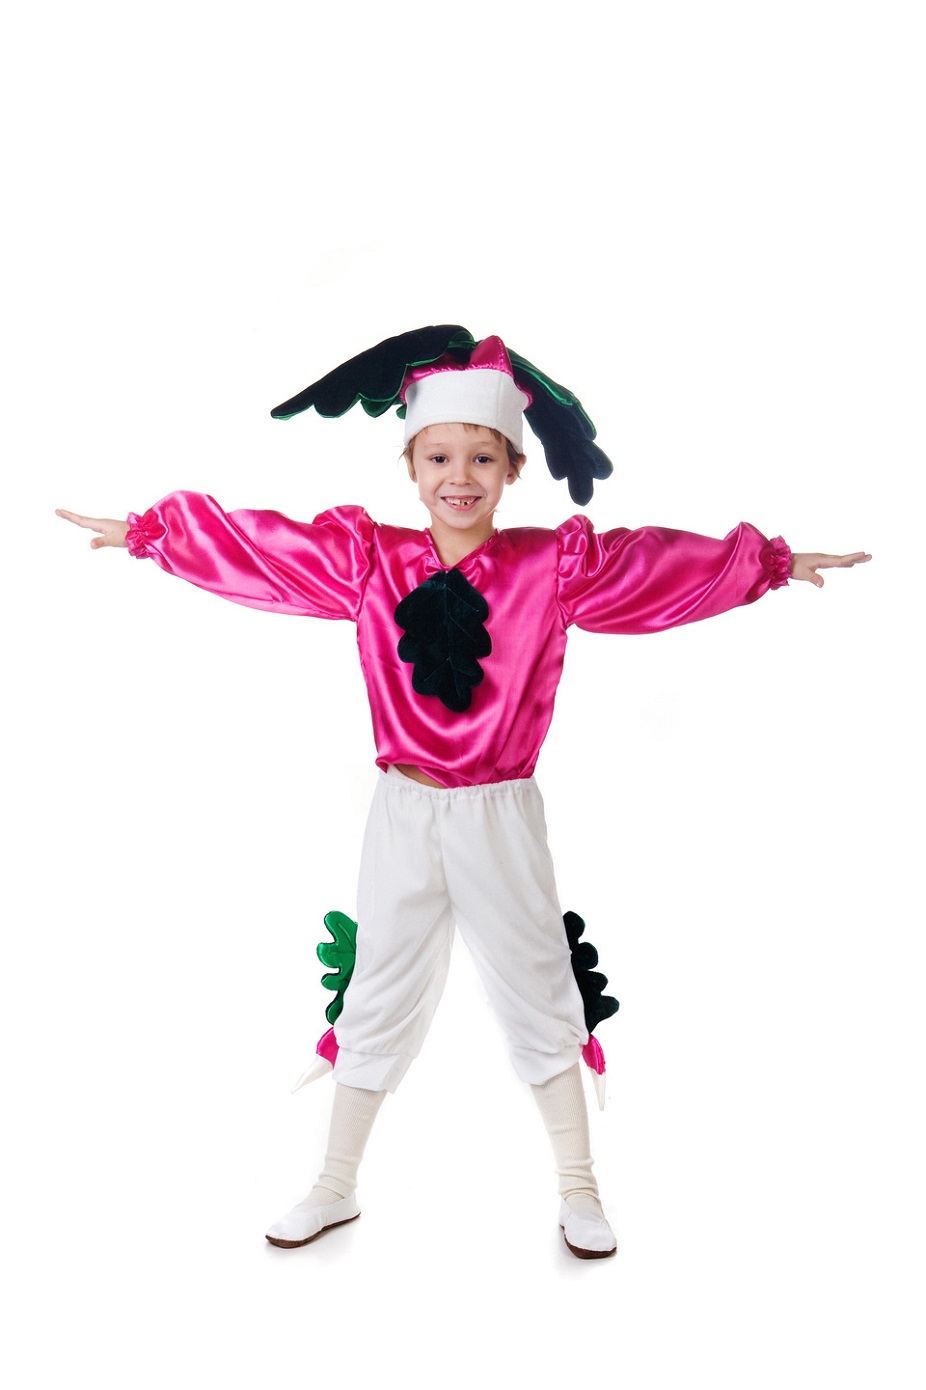 15 идей костюмов для детских праздников